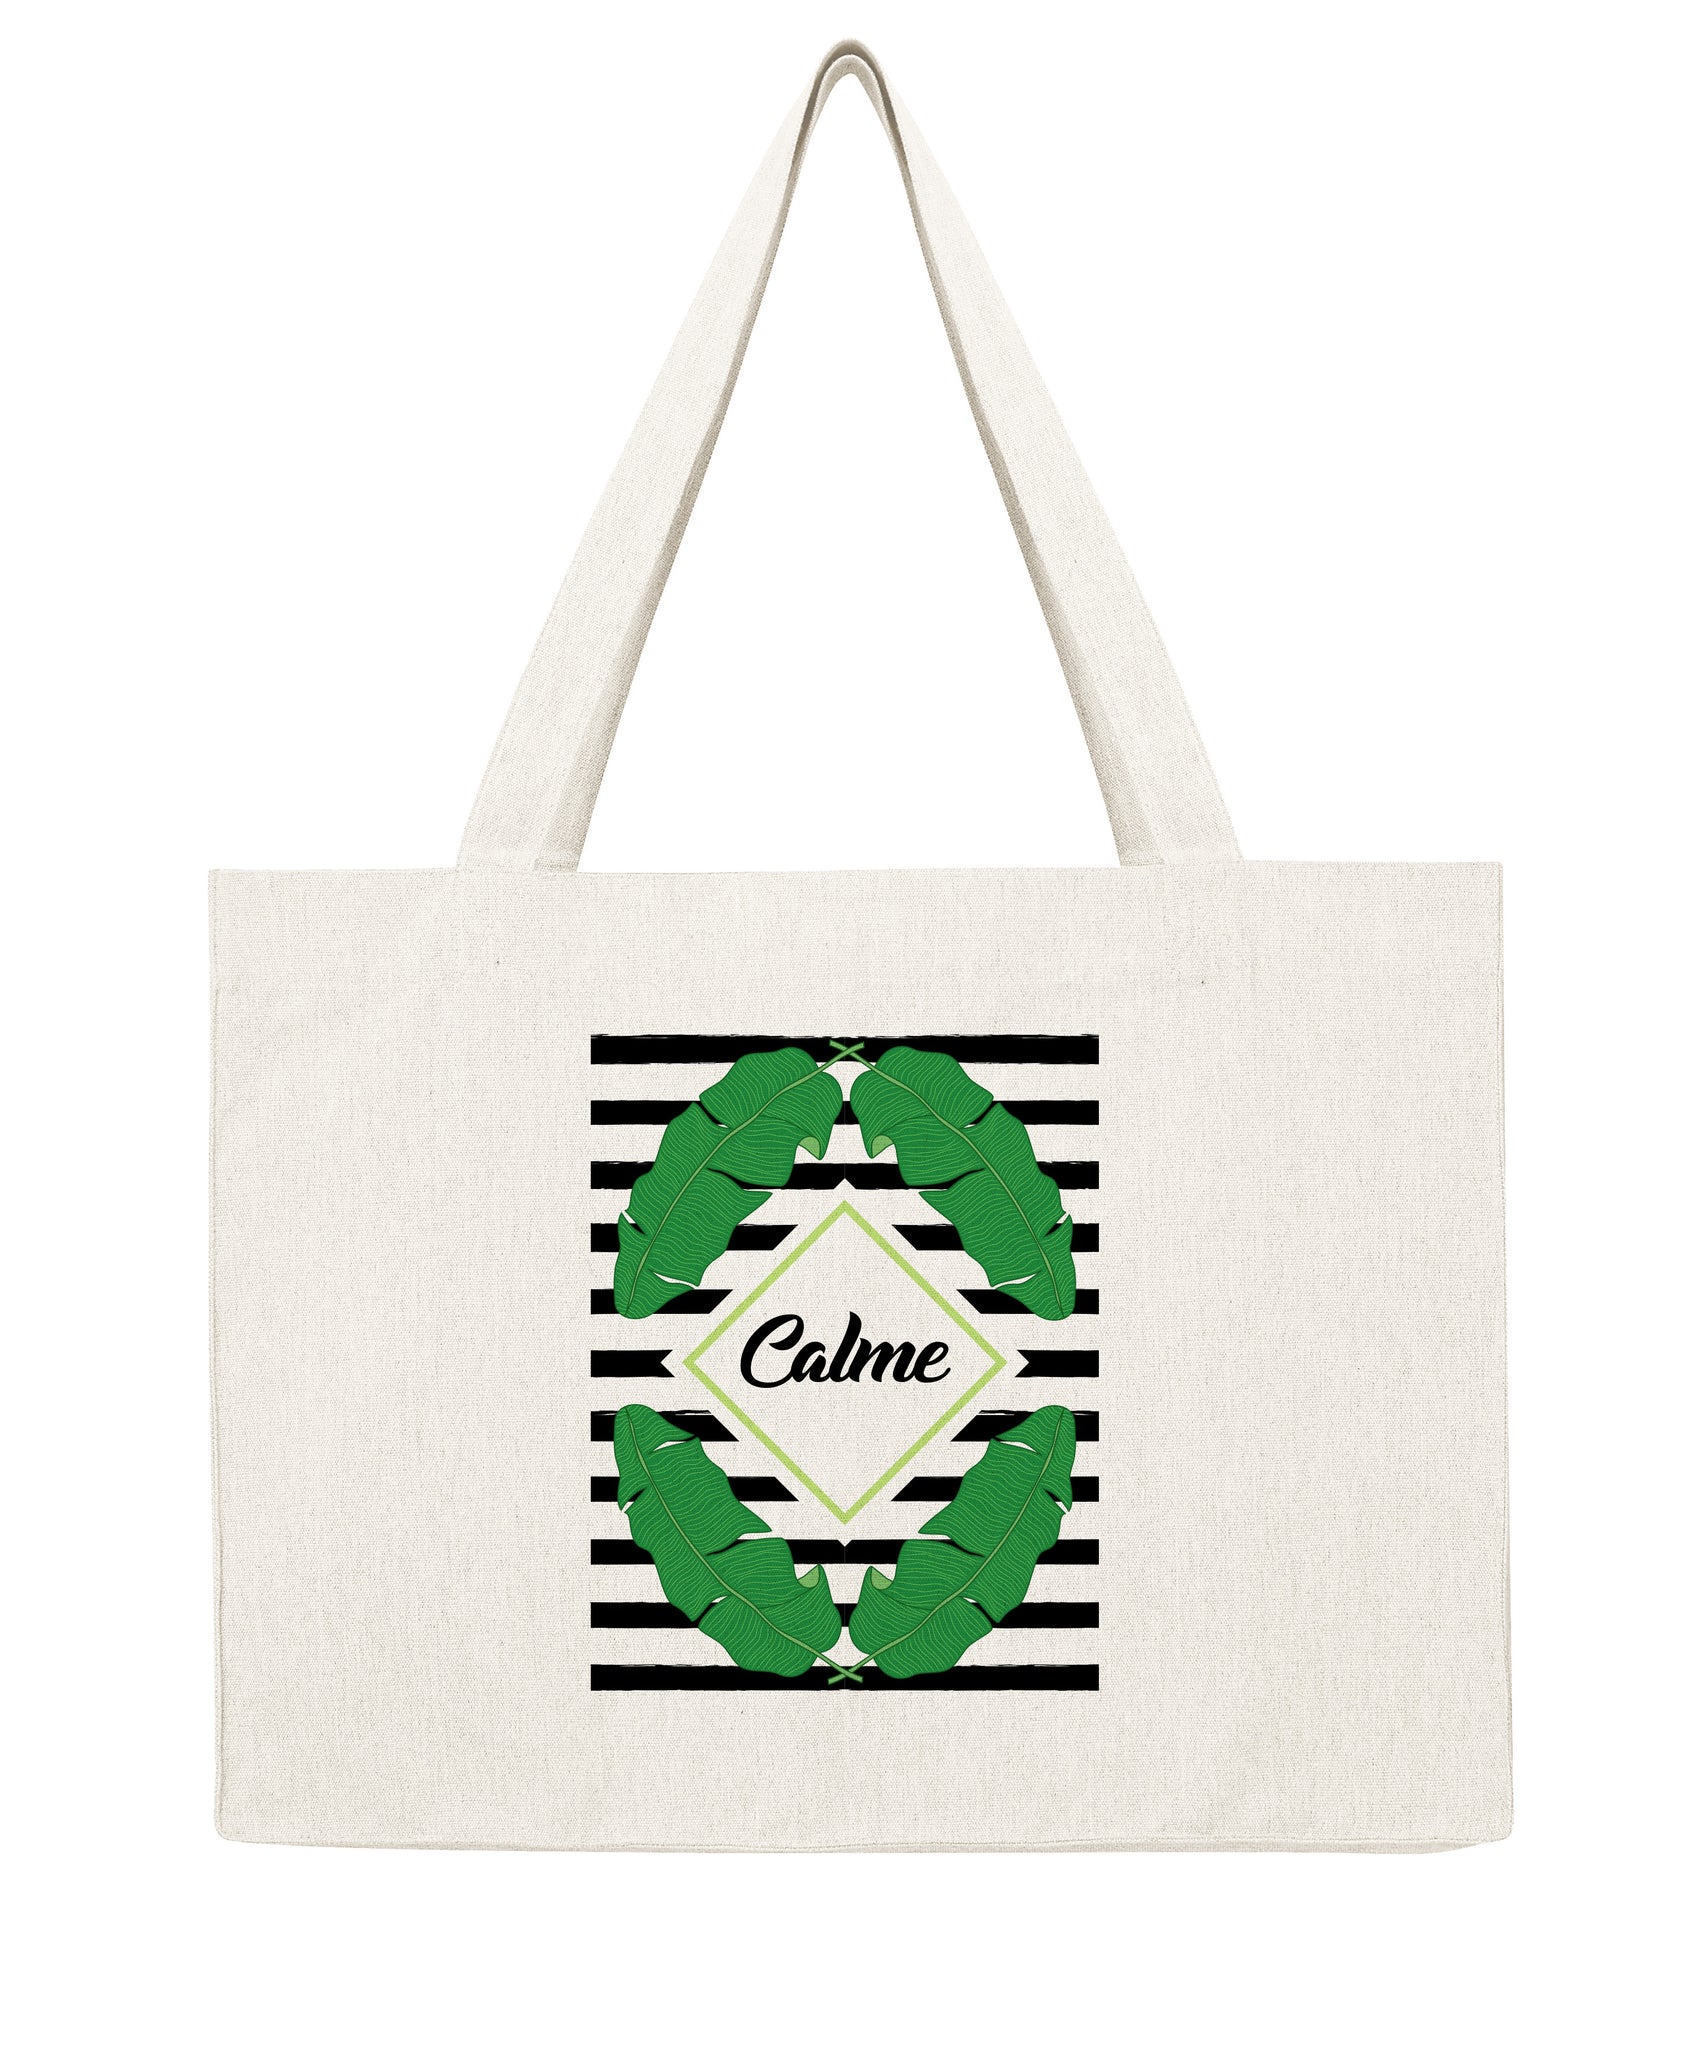 Calme - Shopping bag-Sacs-Atelier Amelot